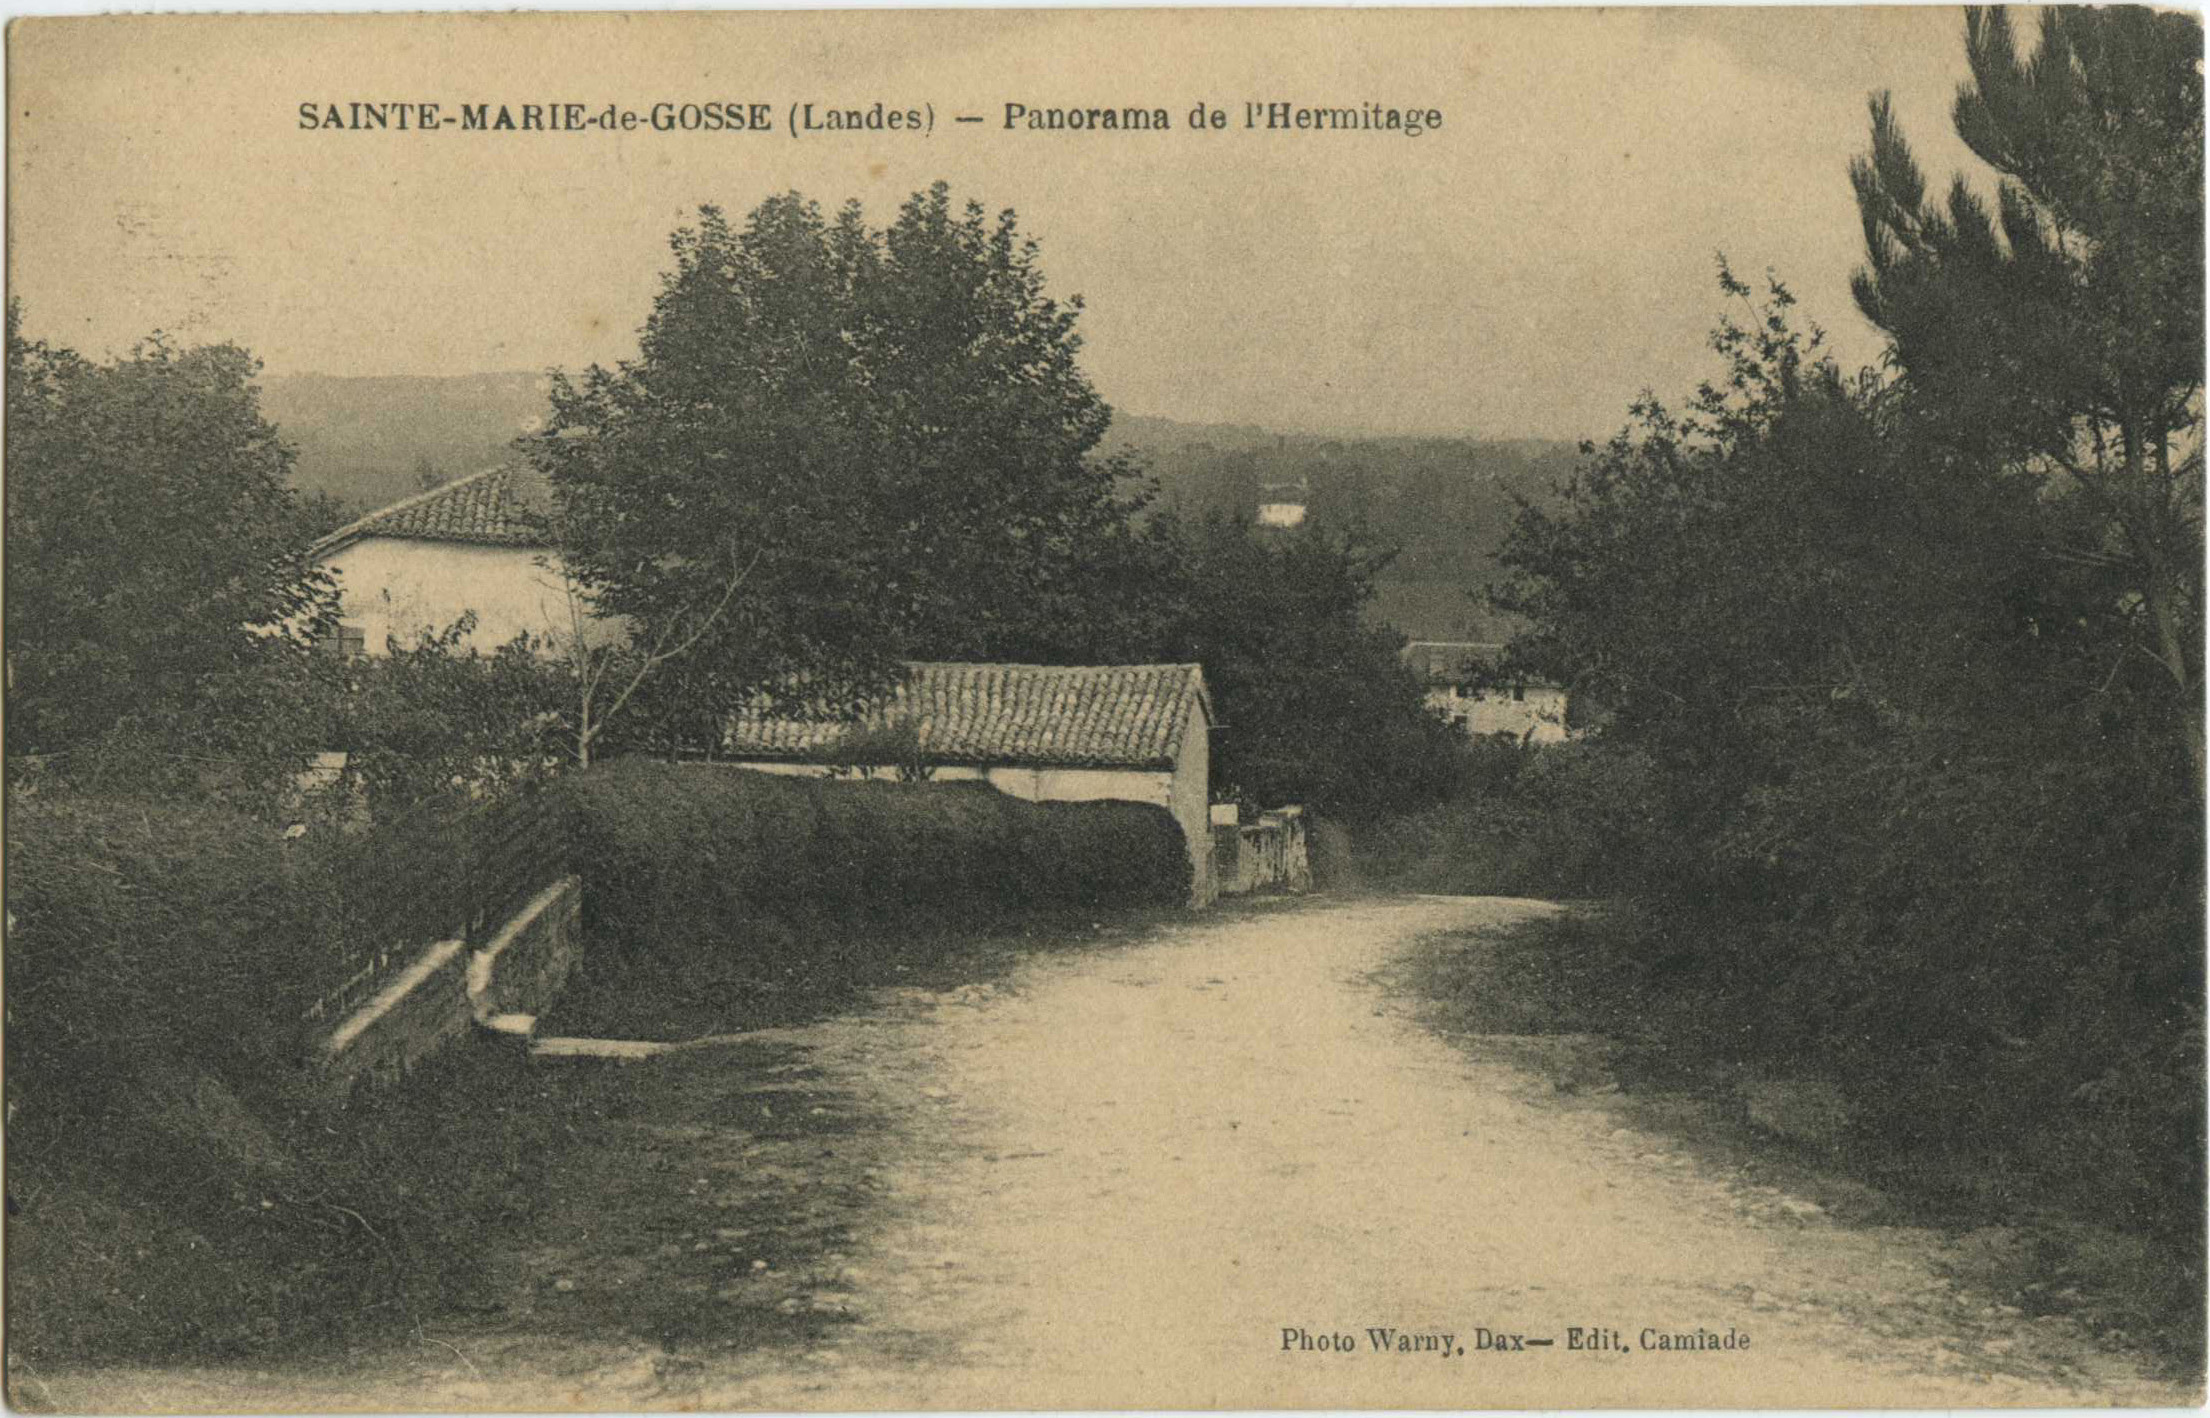 Sainte-Marie-de-Gosse - Panorama de l'Hermitage